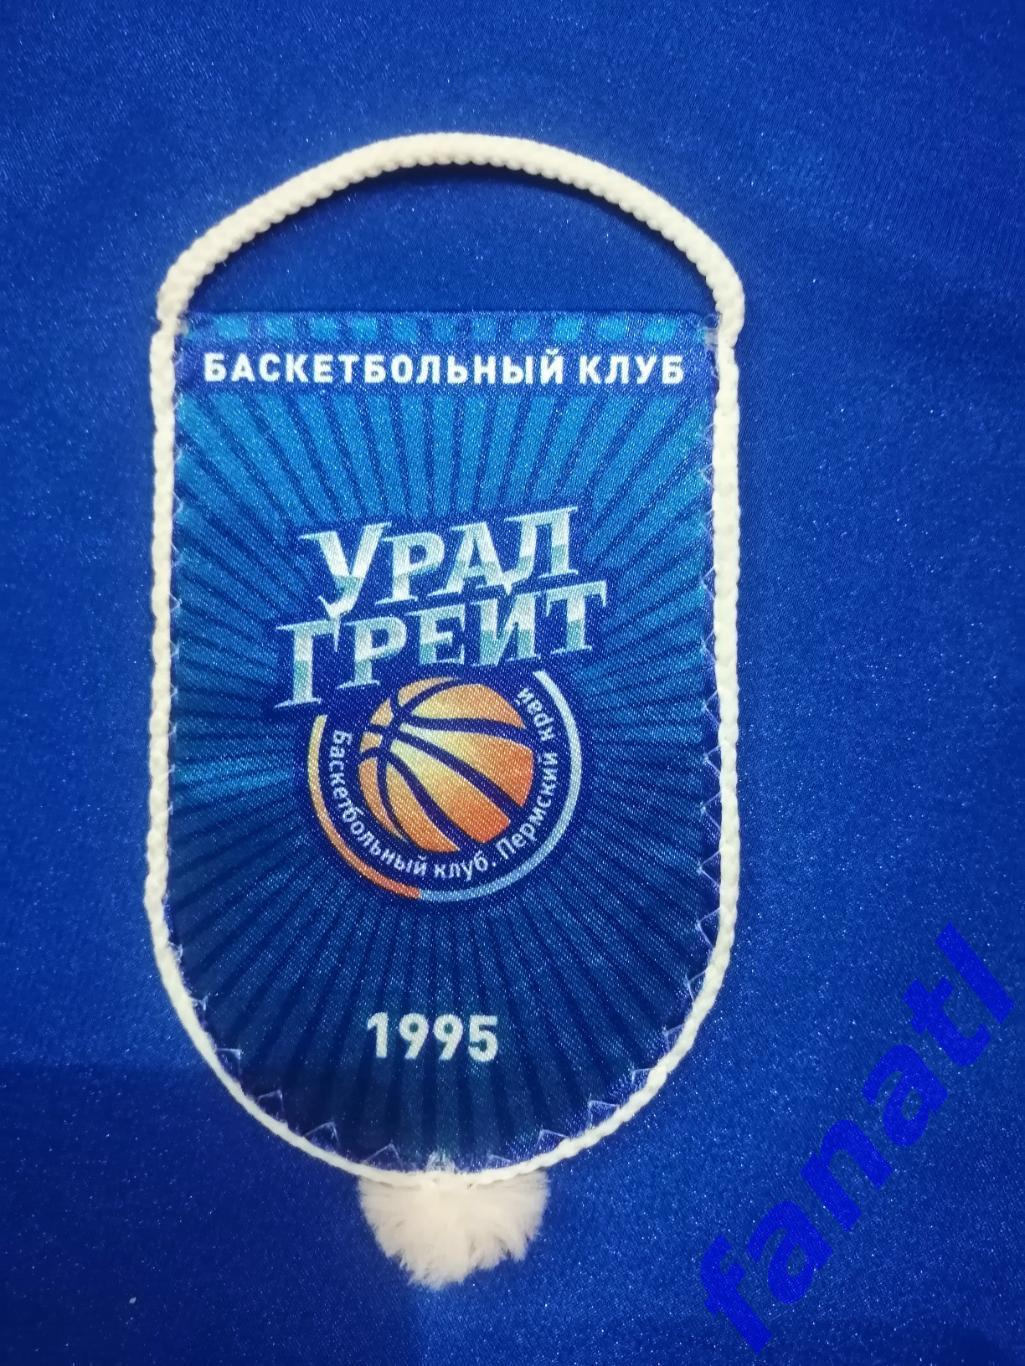 Вымпел Баскетбольный клуб Урал Грейт Пермский край